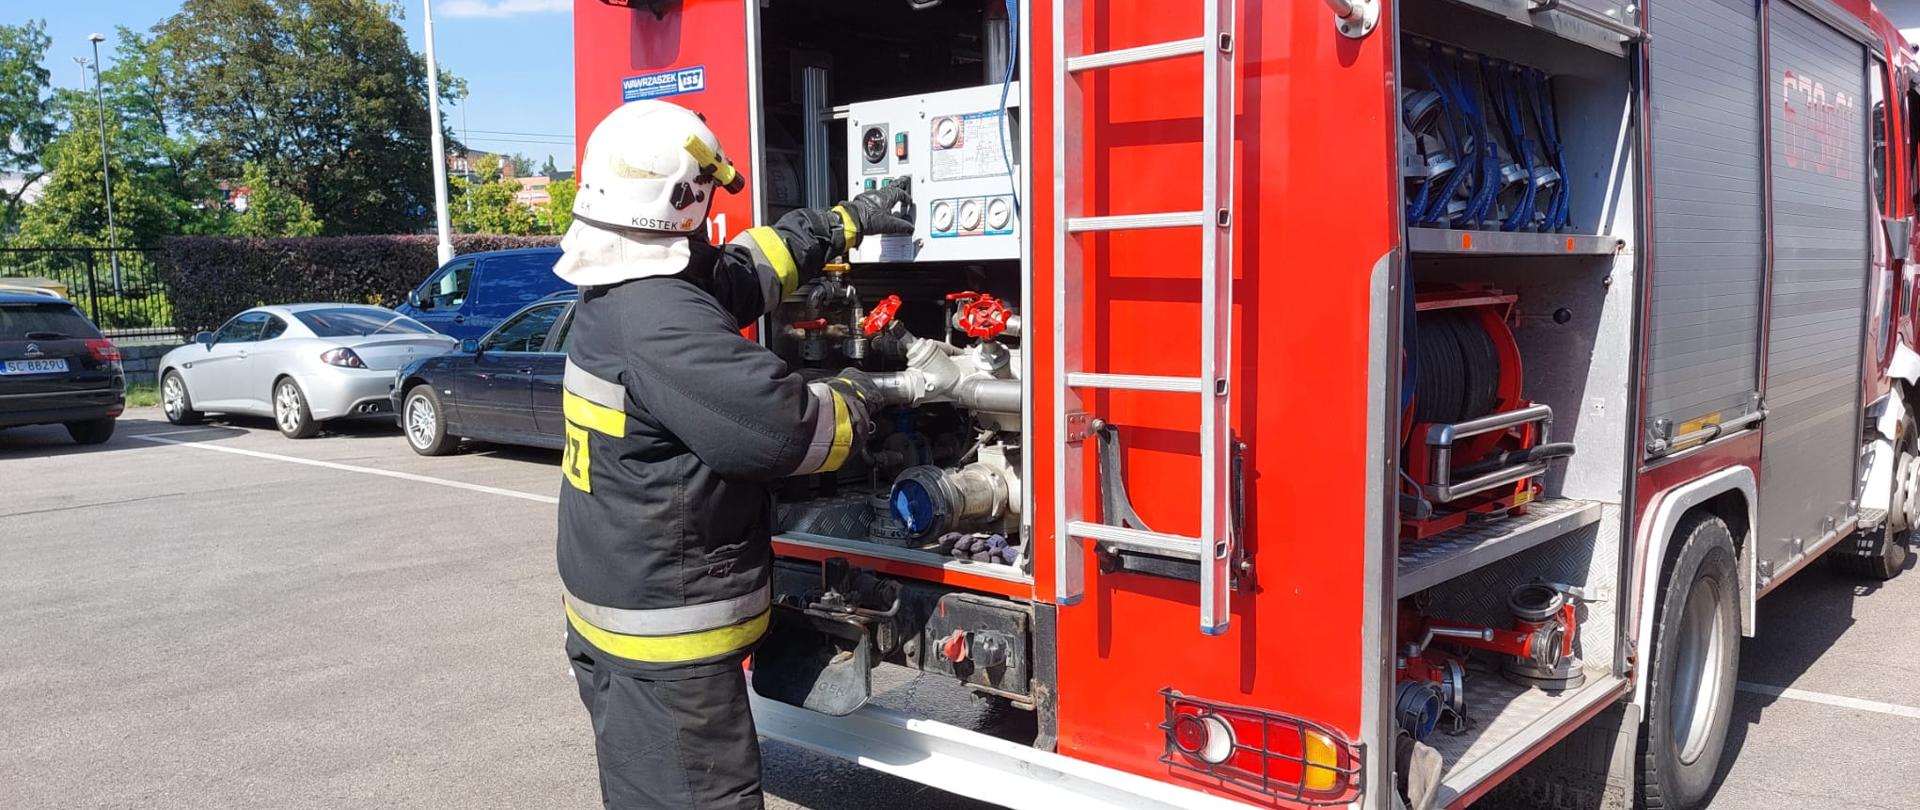 Strażak w hełmie i ubraniu specjalnym obsługuje autopompę samochodu pożarniczego.